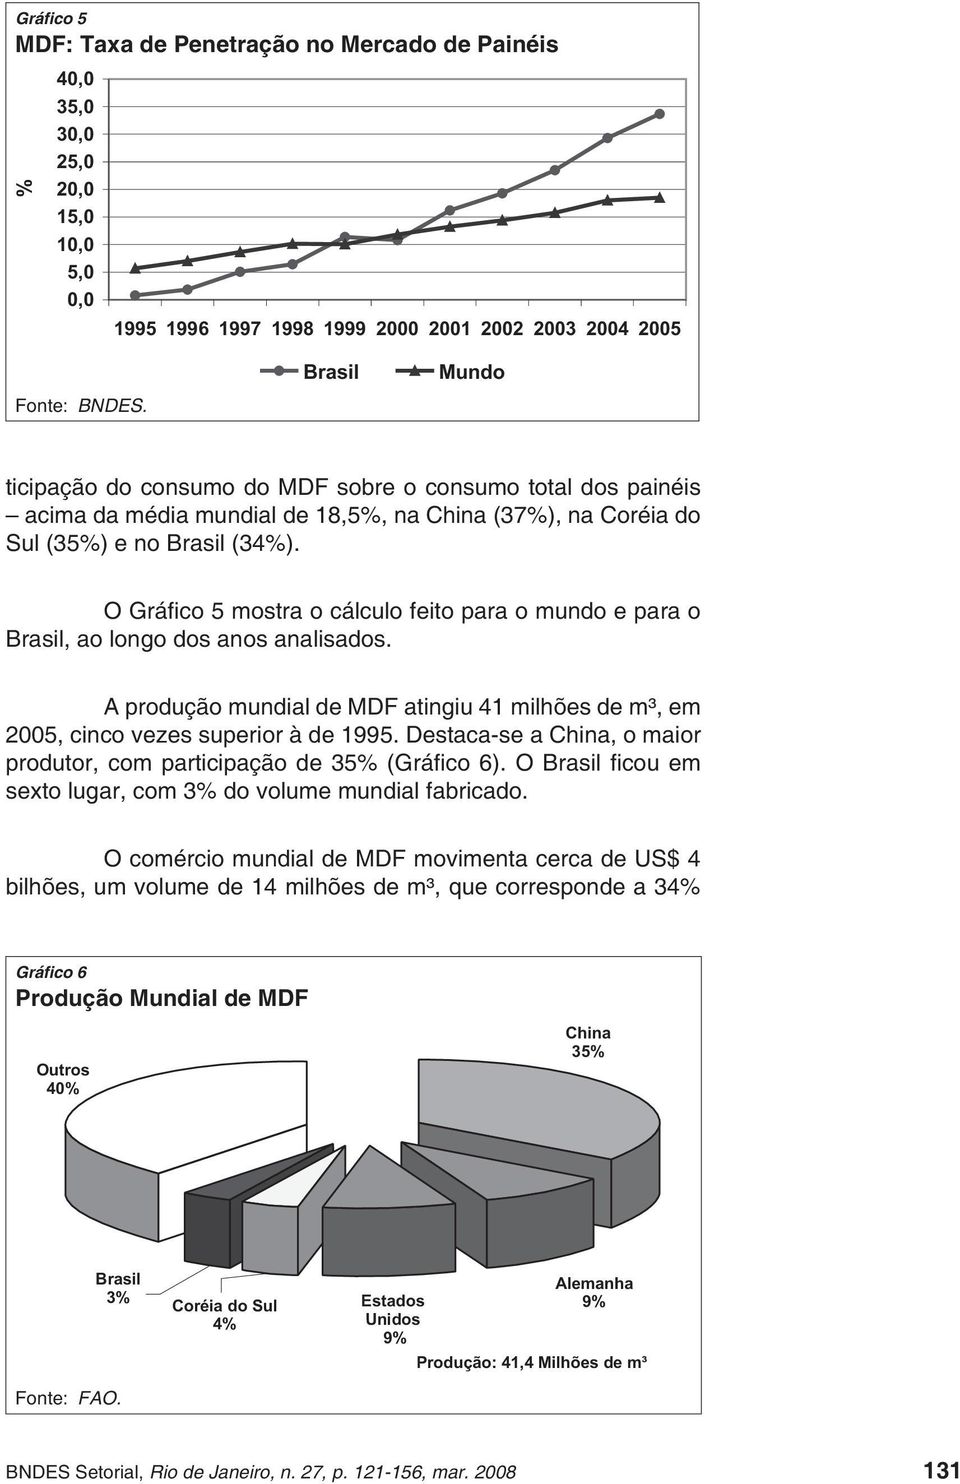 O Gráfico 5 mostra o cálculo feito para o mundo e para o Brasil, ao longo dos anos analisados. A produção mundial de MDF atingiu 41 milhões de m³, em 2005, cinco vezes superior à de 1995.